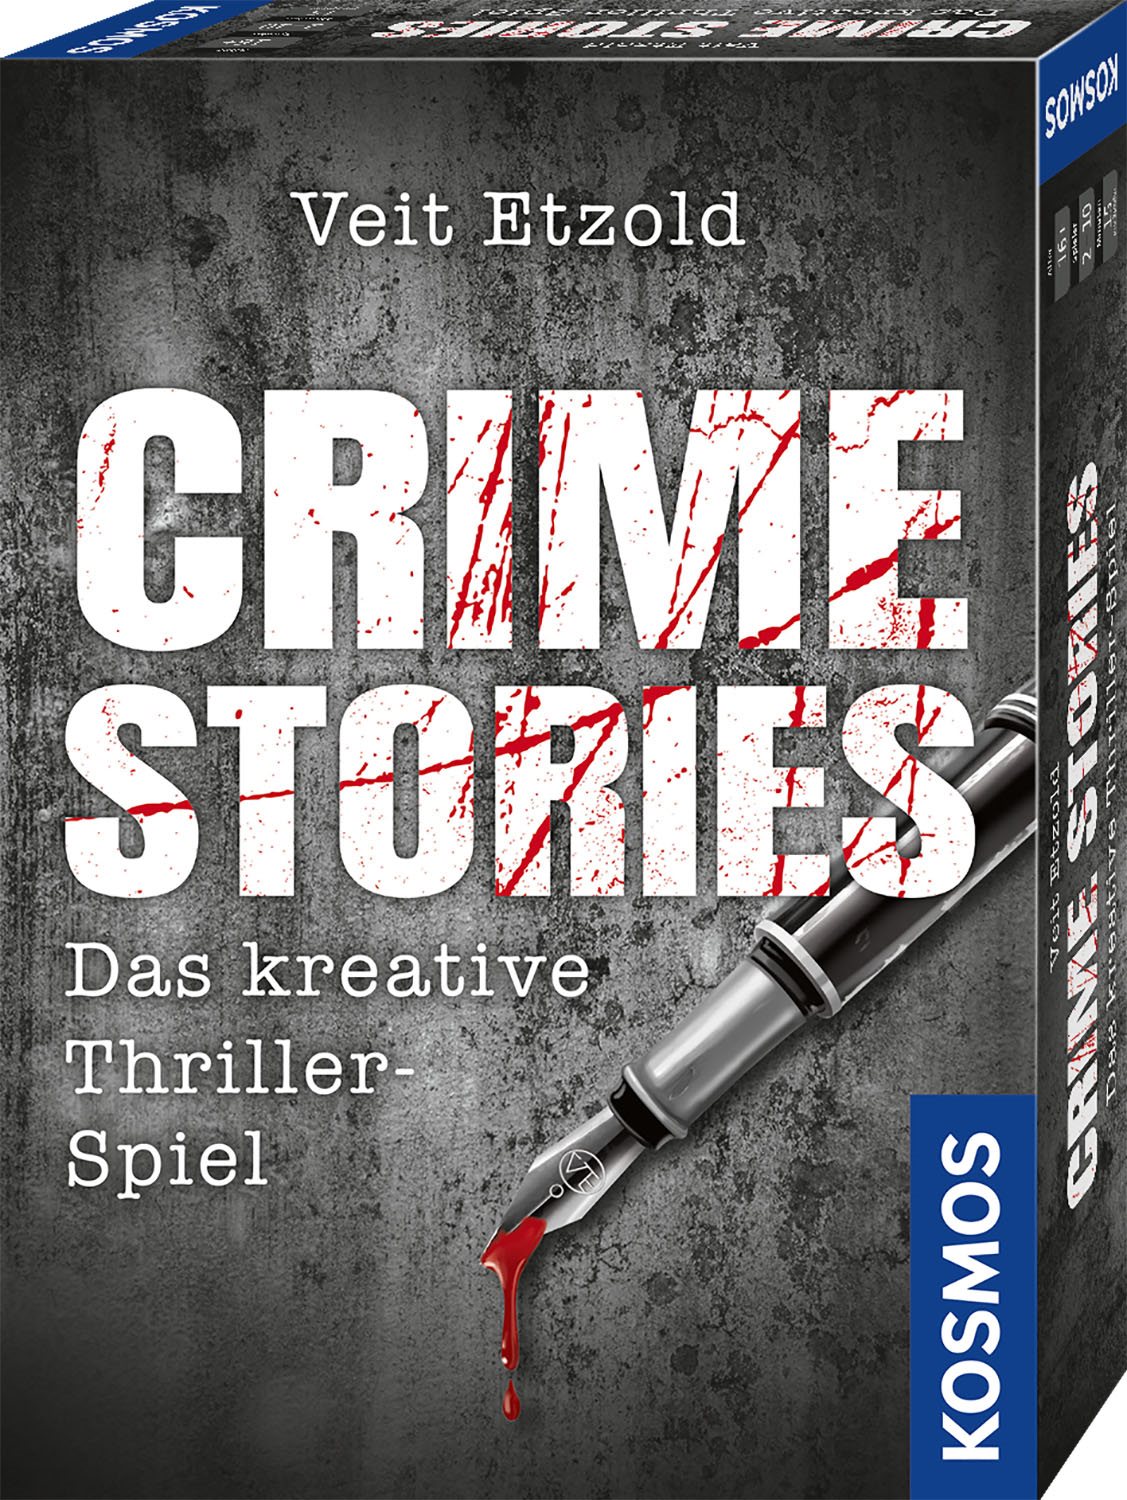 Crime Stories_Das kreative Thriller-Spiel_Veit Etzold